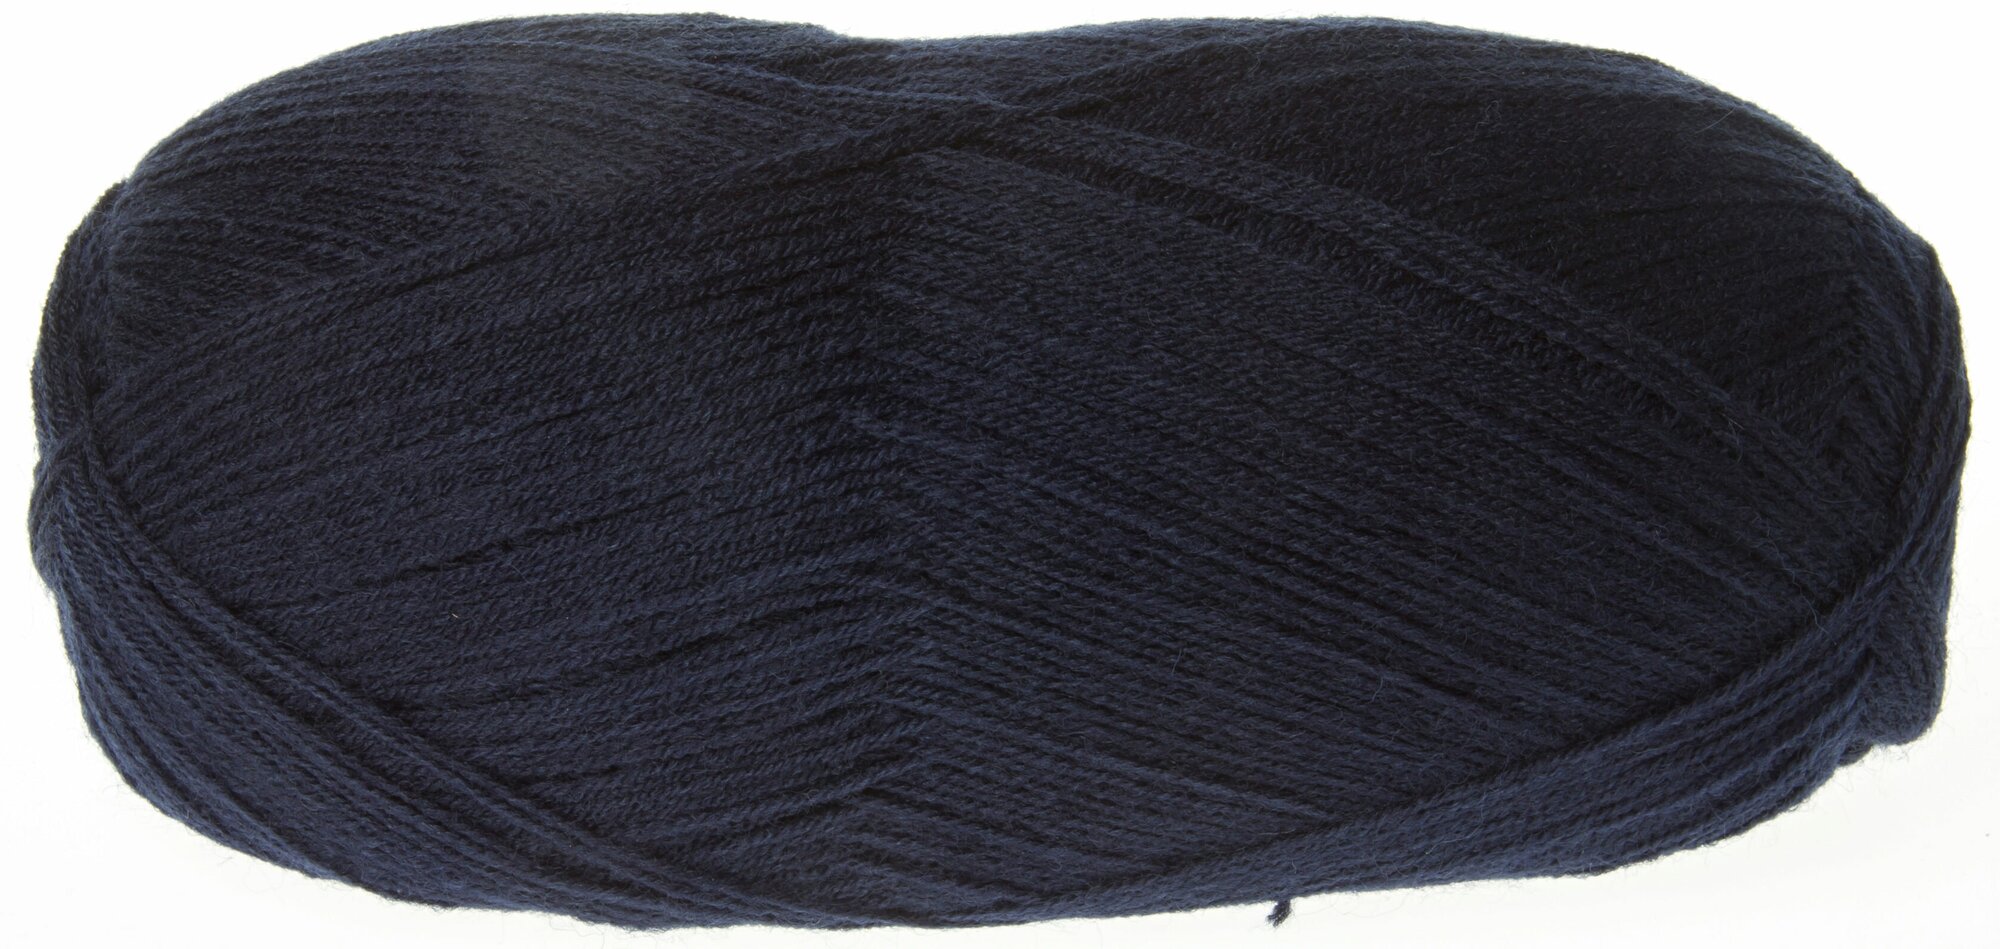 Пряжа Alize Lanagold 800 темно-синий (58), 51%акрил/49%шерсть, 800м, 100г, 1шт